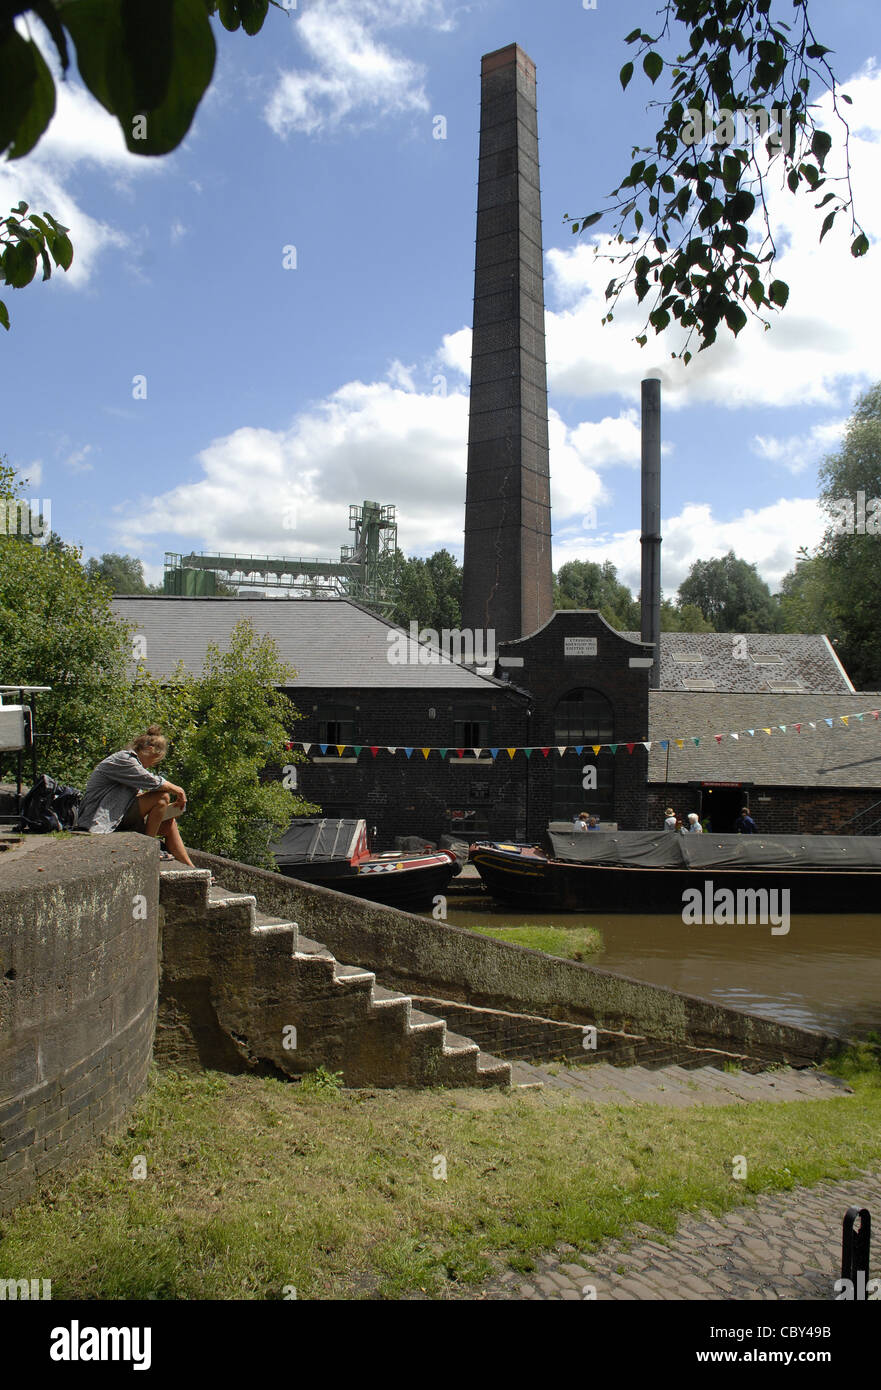 Etrurien Industriemuseum, Stoke-on-Trent, die letzten Arbeiten Dampf-gefahrene Keramik Mühle in Großbritannien. Eine beliebte Touristenattraktion. Stockfoto